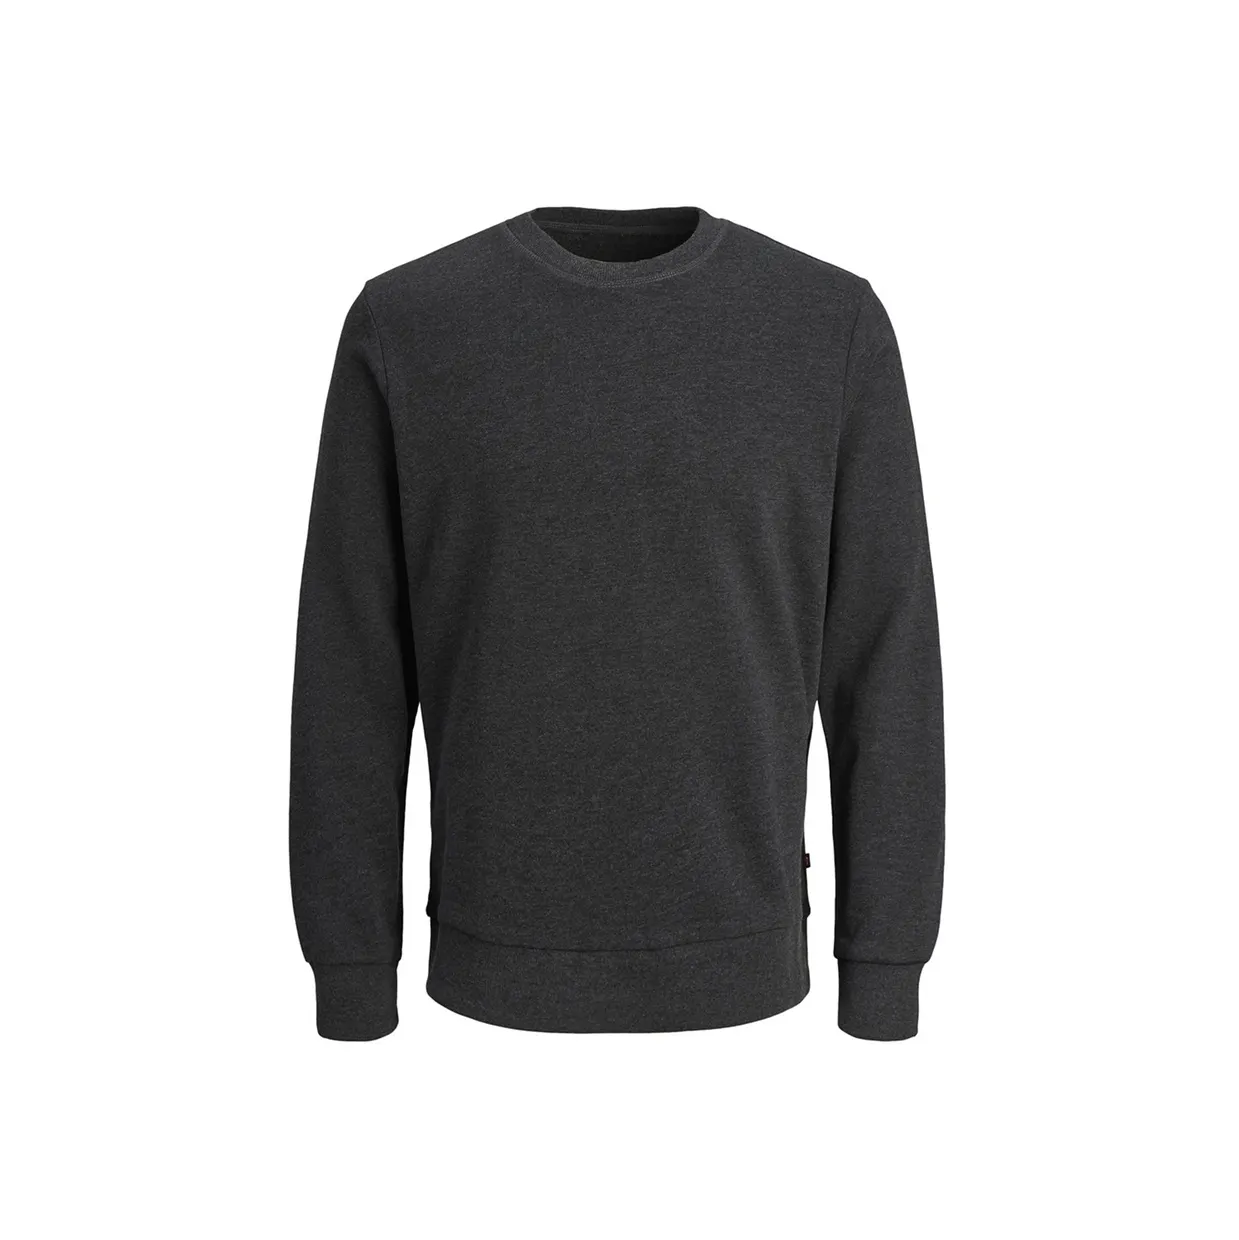 Pro kalite kendi tasarım rahat tişörtü erkekler için popüler tasarım yüksek kalite sıcak satış erkekler için tişörtü